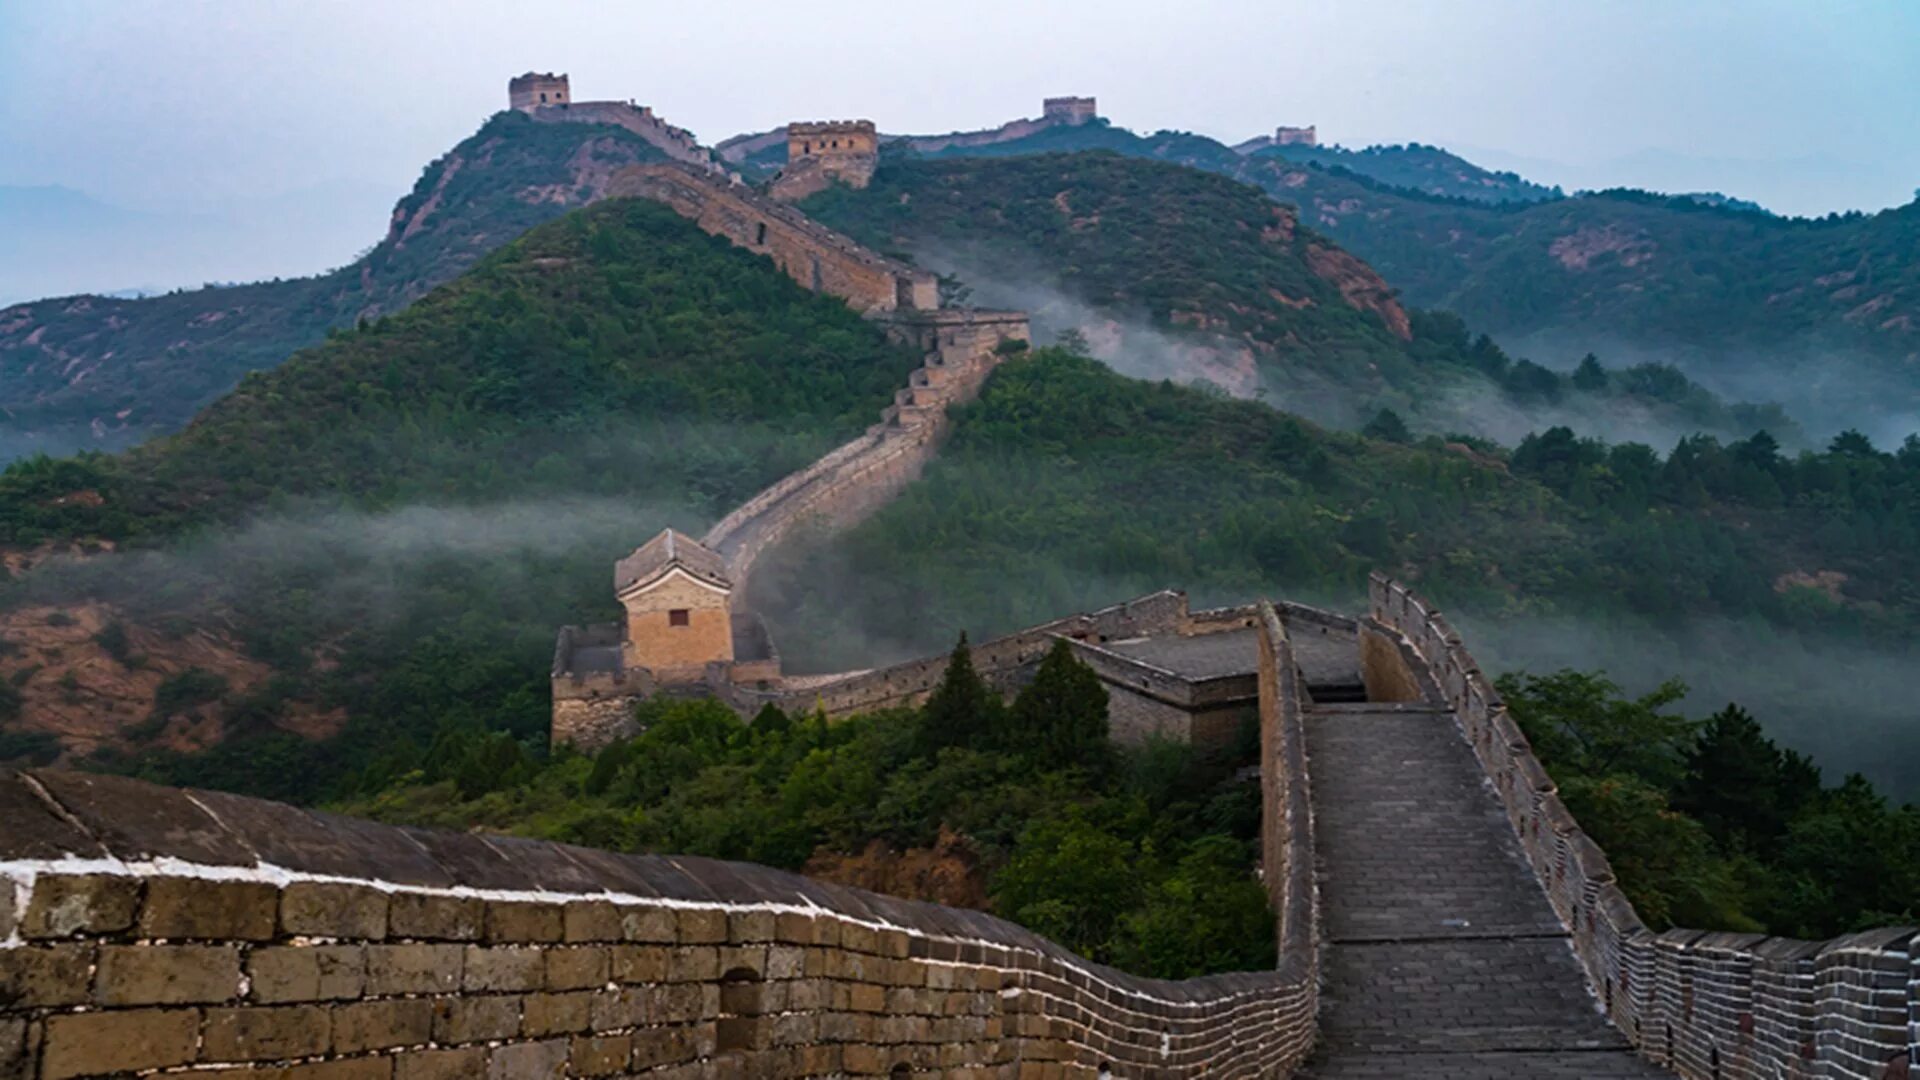 Части великой китайской стены. Китай Великая китайская стена. Великая китайская стена Тяньцзинь. Великая китайская стена (Северный Китай). Великая китайская стена ландшафт.